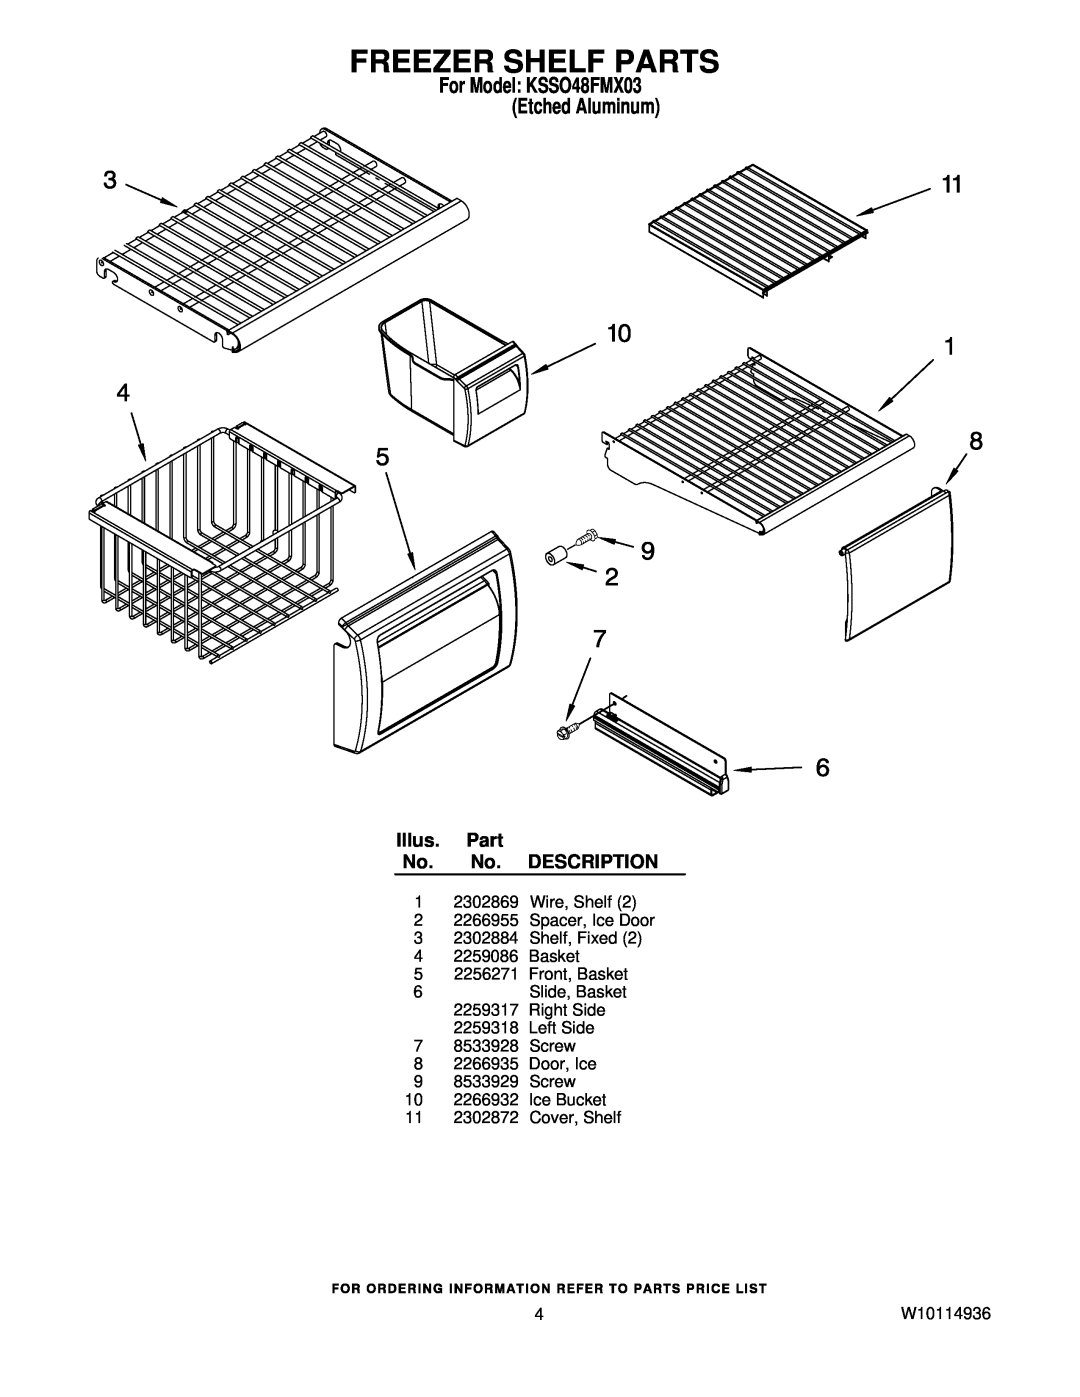 KitchenAid manual Freezer Shelf Parts, For Model KSSO48FMX03 Etched Aluminum, Illus. Part No. No. DESCRIPTION, W10114936 